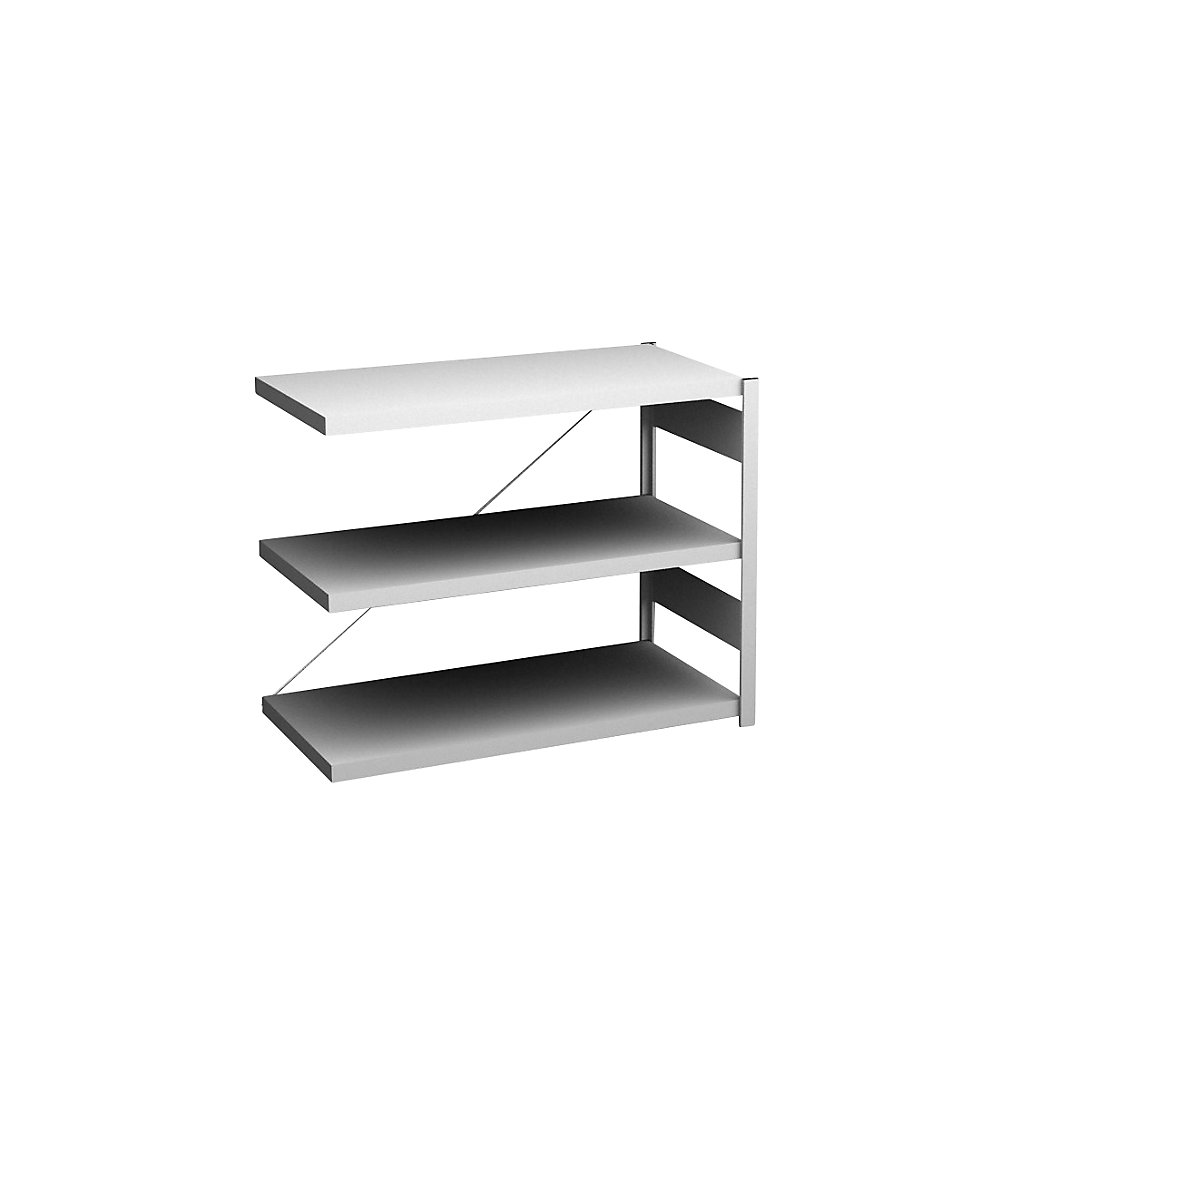 Sideboard shelving unit, light grey – hofe, height 825 mm, 3 shelves, extension shelf unit, shelf depth 500 mm, max. shelf load 140 kg-1